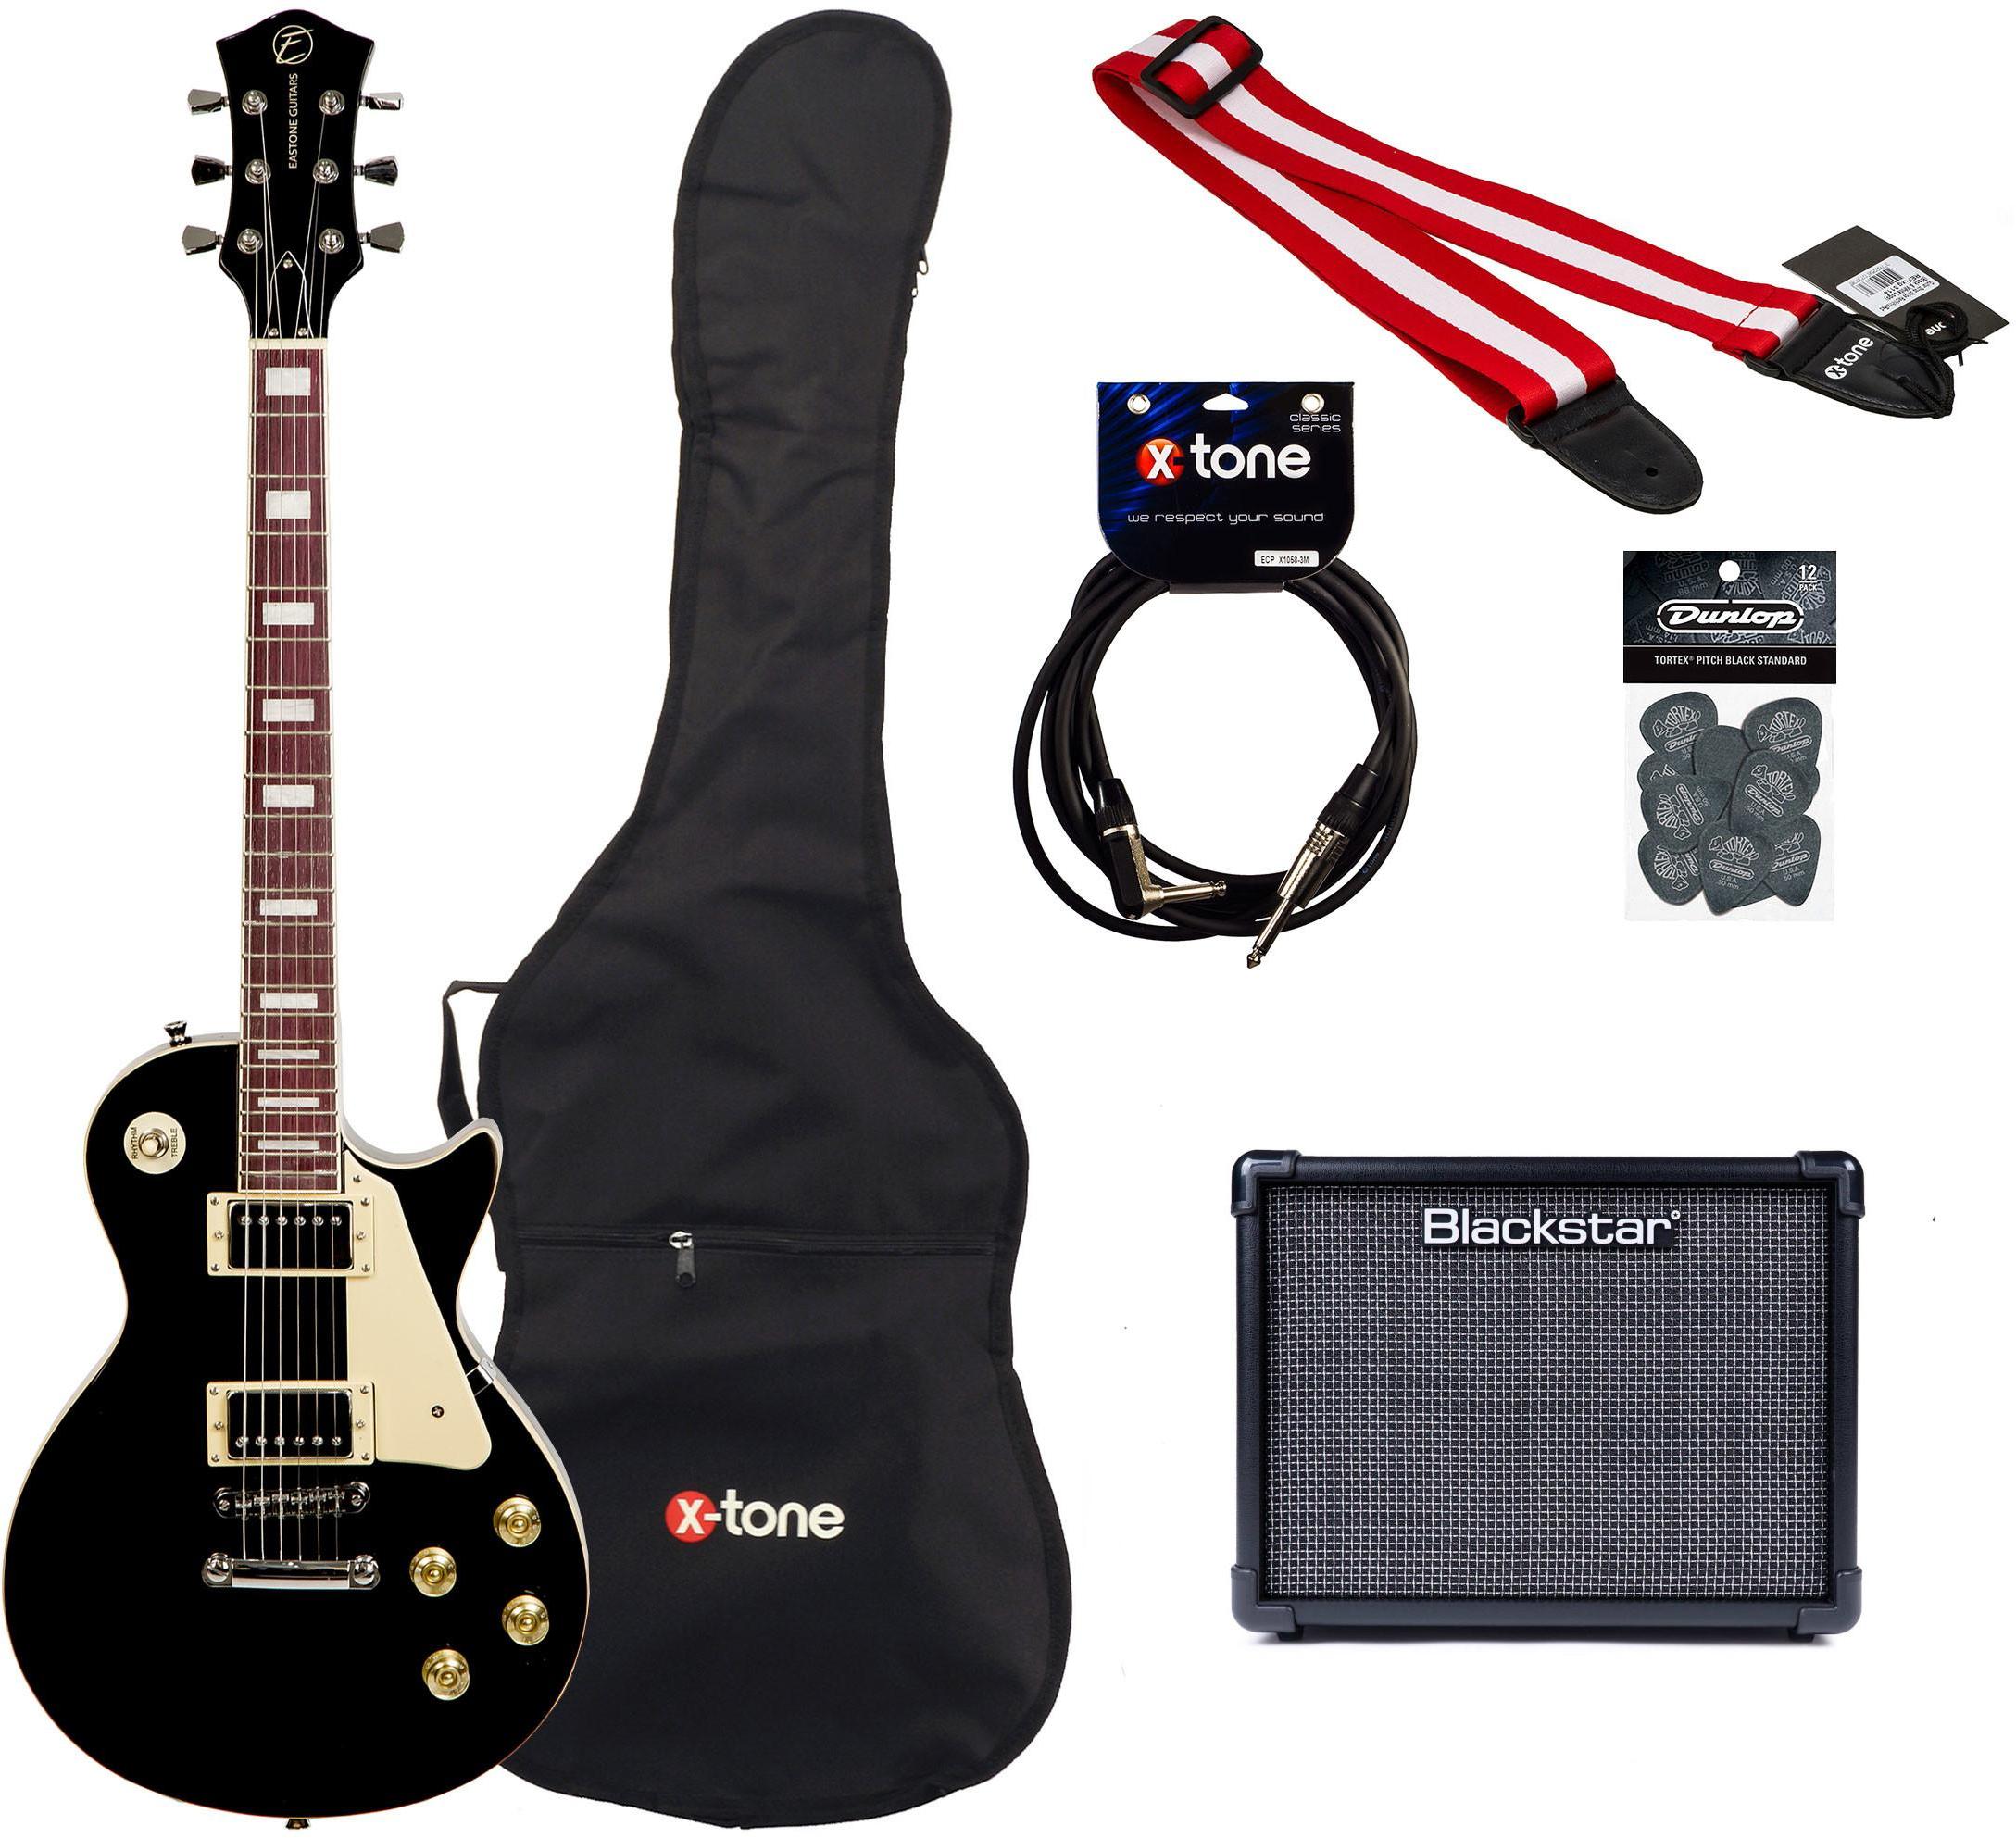 Pack guitare électrique Eastone LP100 + Blackstar ID Core V3 Stereo 10 +Accessories - Black